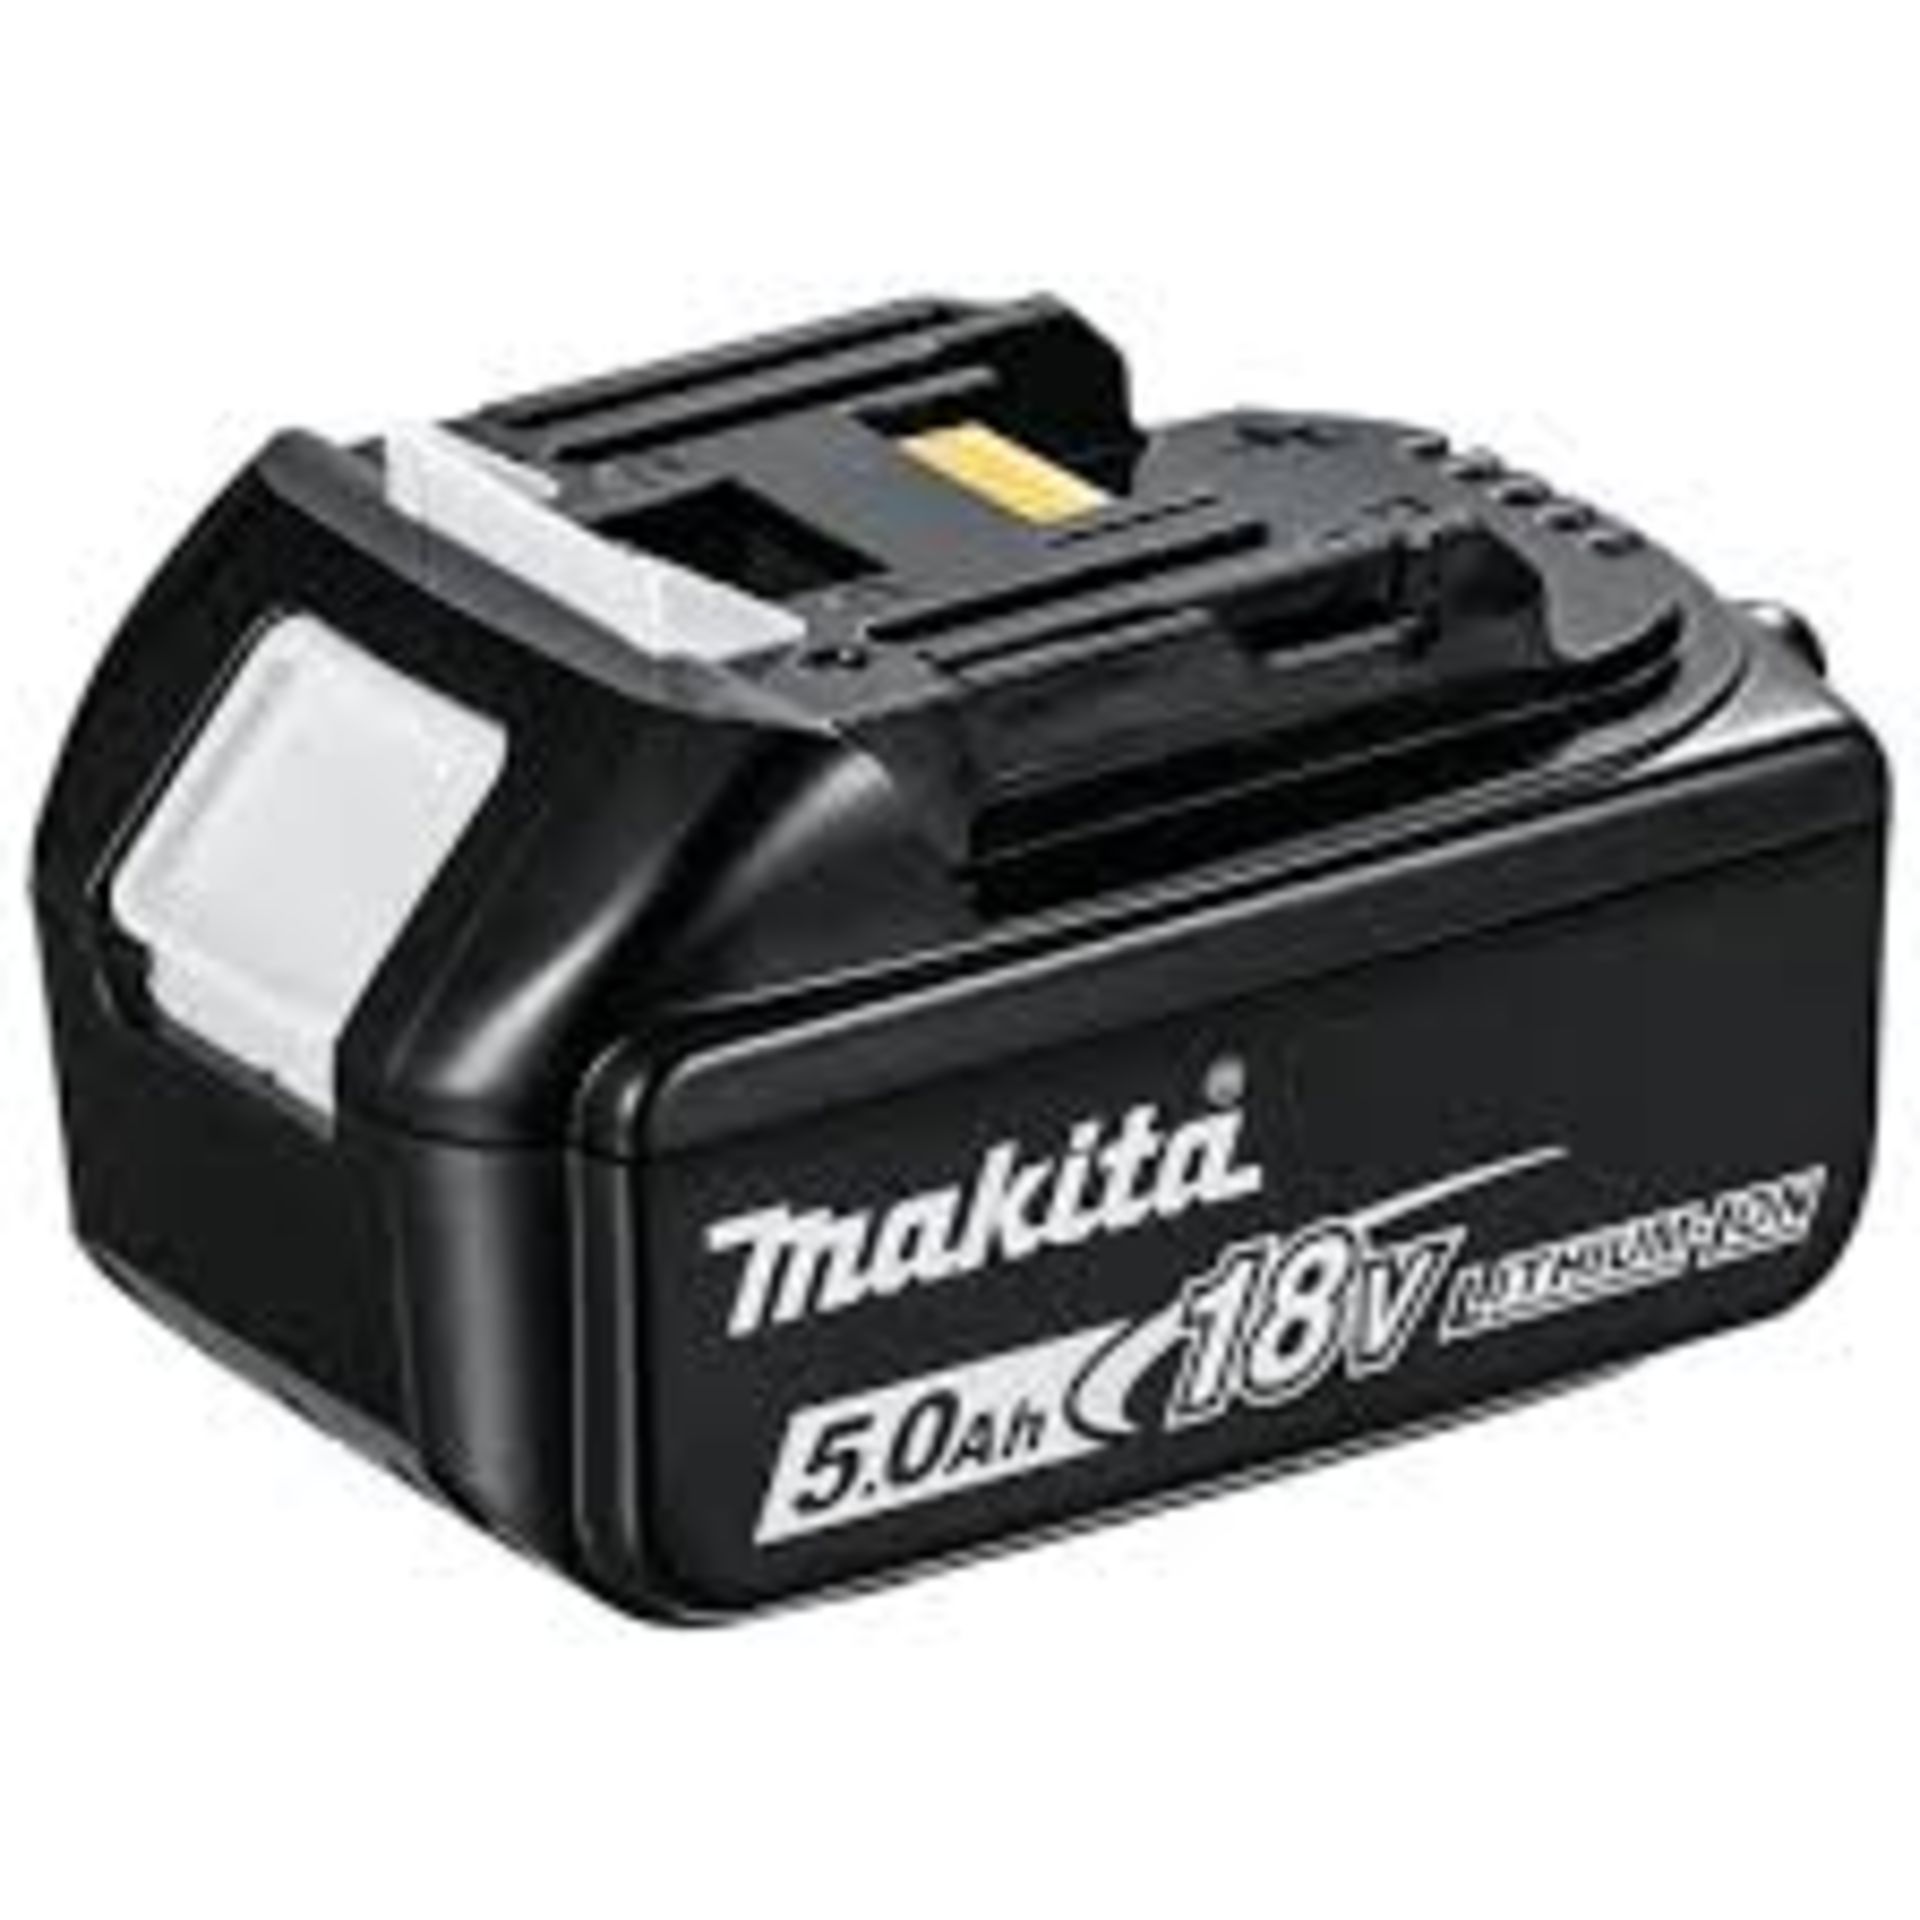 2 x Makita BL1850 18v LXT 5.0Ah Li-Ion Battery. - R13a.10. In a Carry Case.